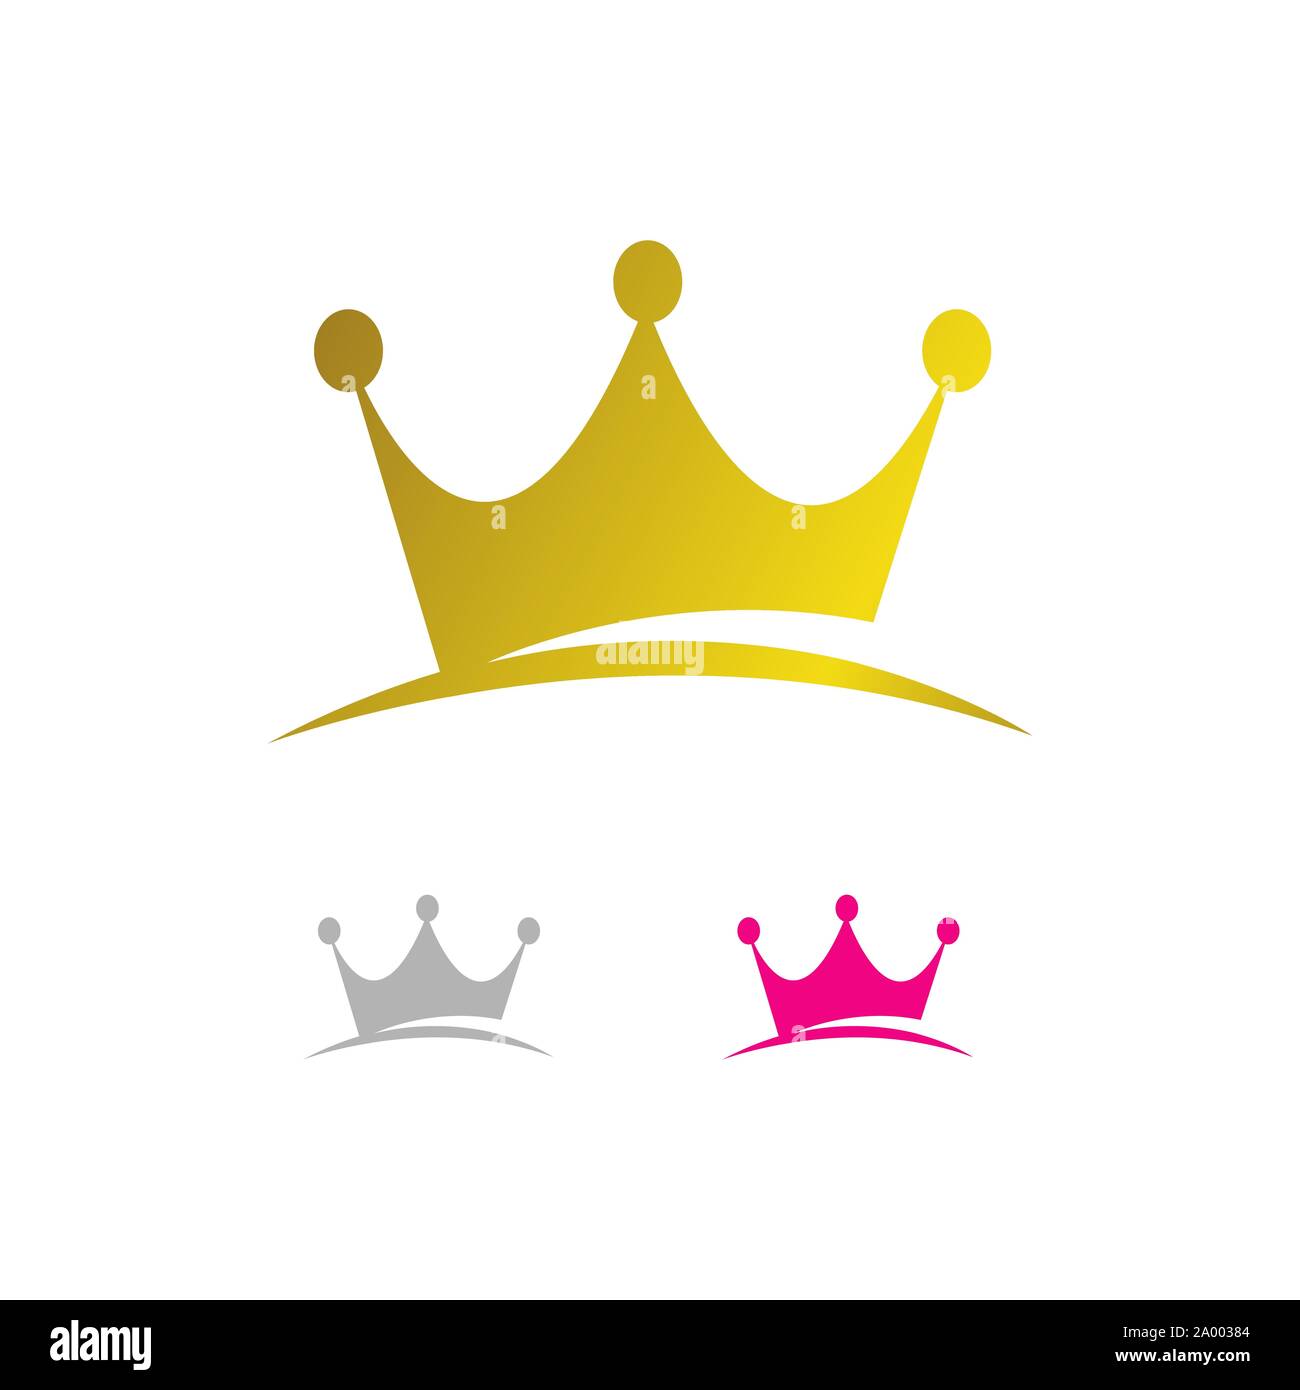 queen logo vector